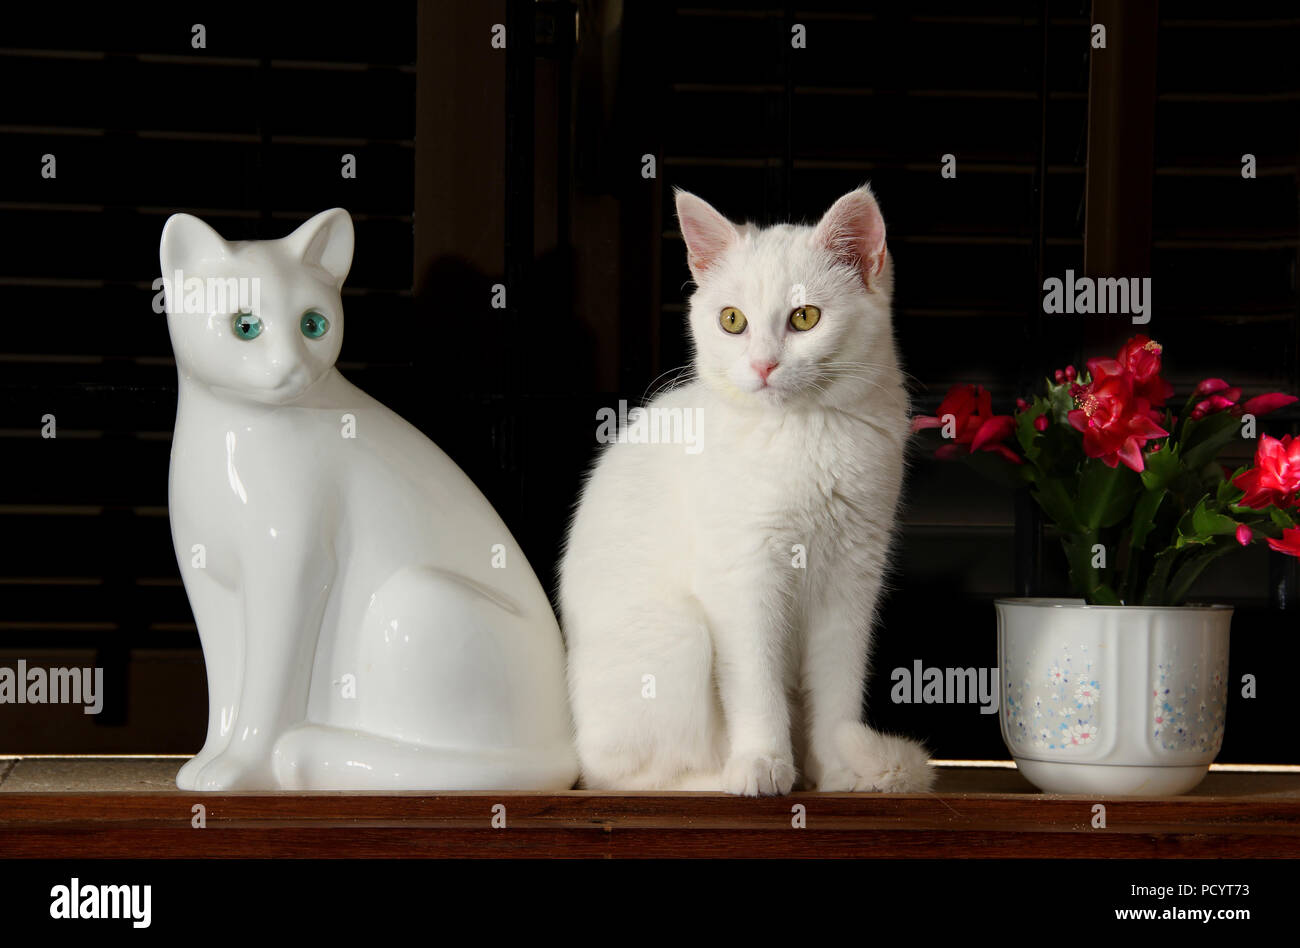 Chaton blanc, 3 mois, assis près d'une figurine d'un chat blanc Banque D'Images